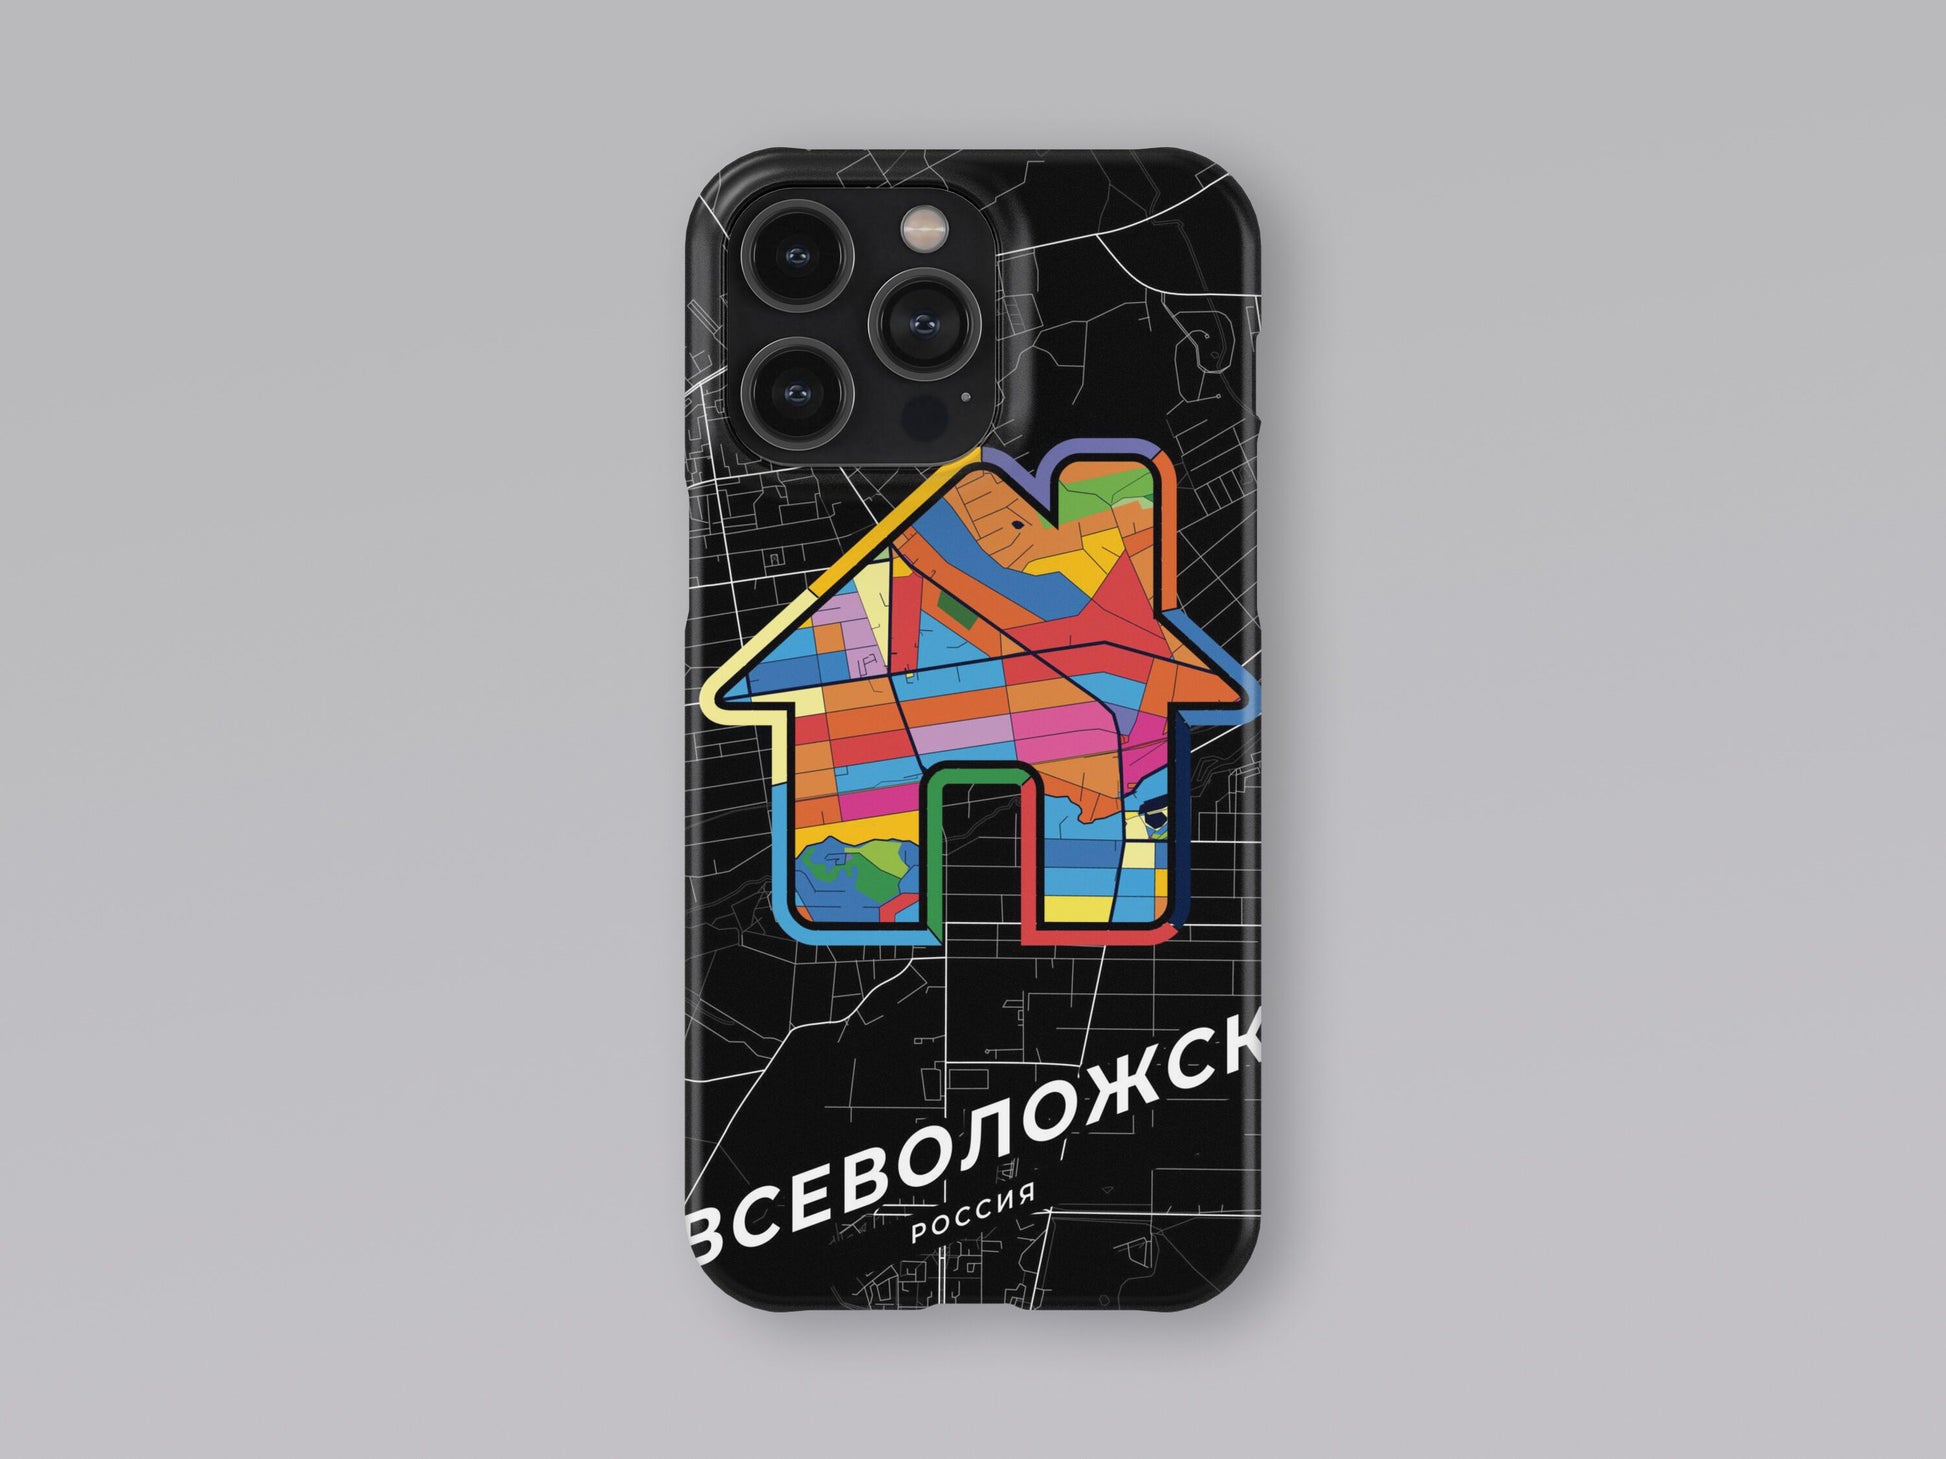 Vsevolozhsk Russia slim phone case with colorful icon 3